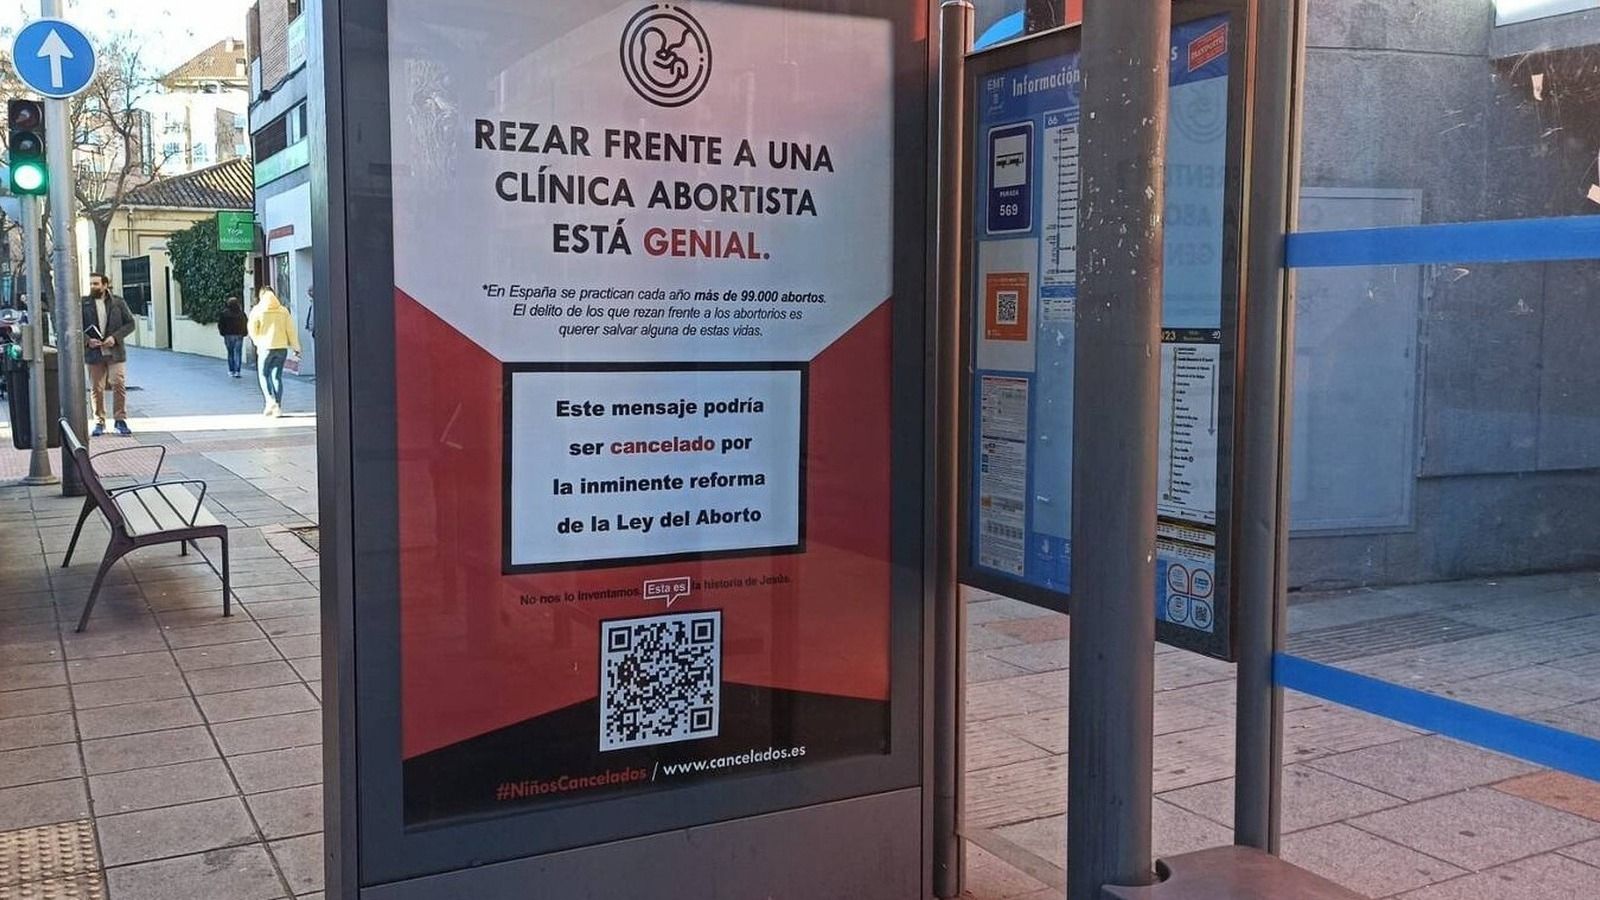 Una campaña en contra del plan ‘pro-aborto’ del Gobierno y la cancelación llega a Pozuelo: “Rezar frente a las clínicas abortistas está genial”